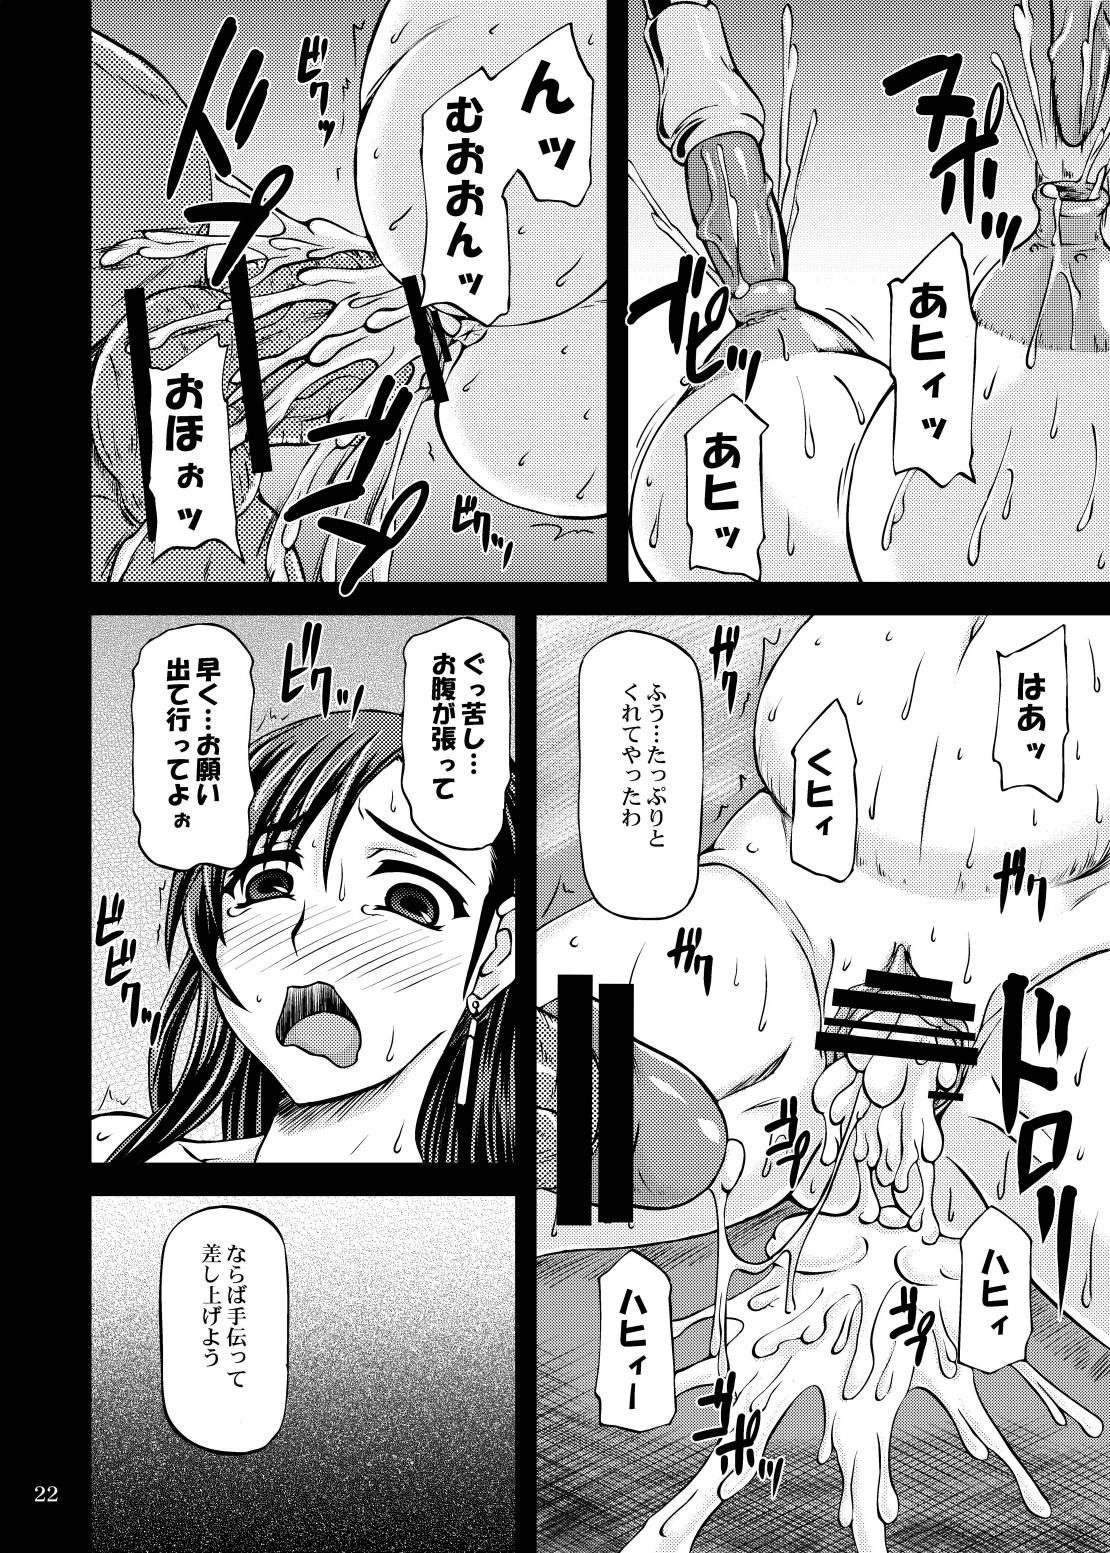 (ComiComi15) [Anglachel (Yamamura Natsuru)] Genkai o Koeru (Final Fantasy VII) page 22 full